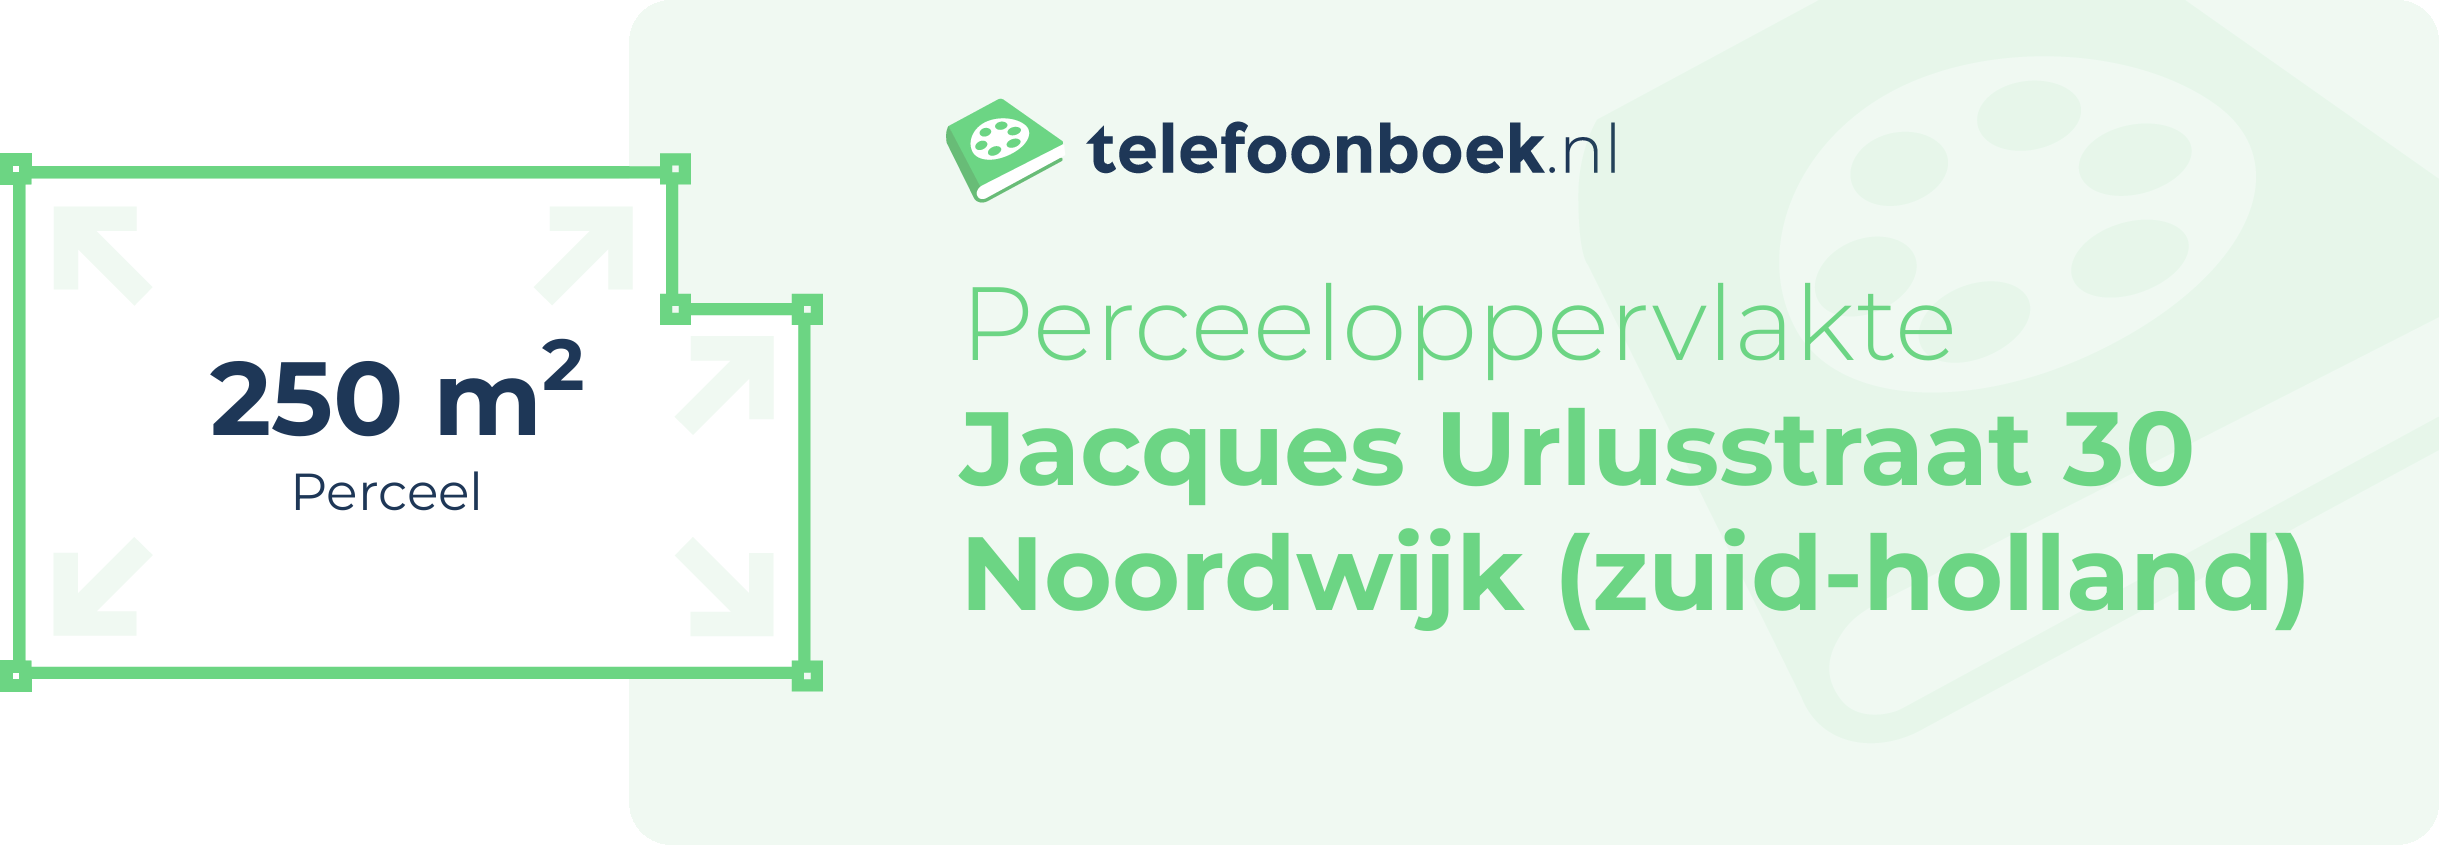 Perceeloppervlakte Jacques Urlusstraat 30 Noordwijk (Zuid-Holland)